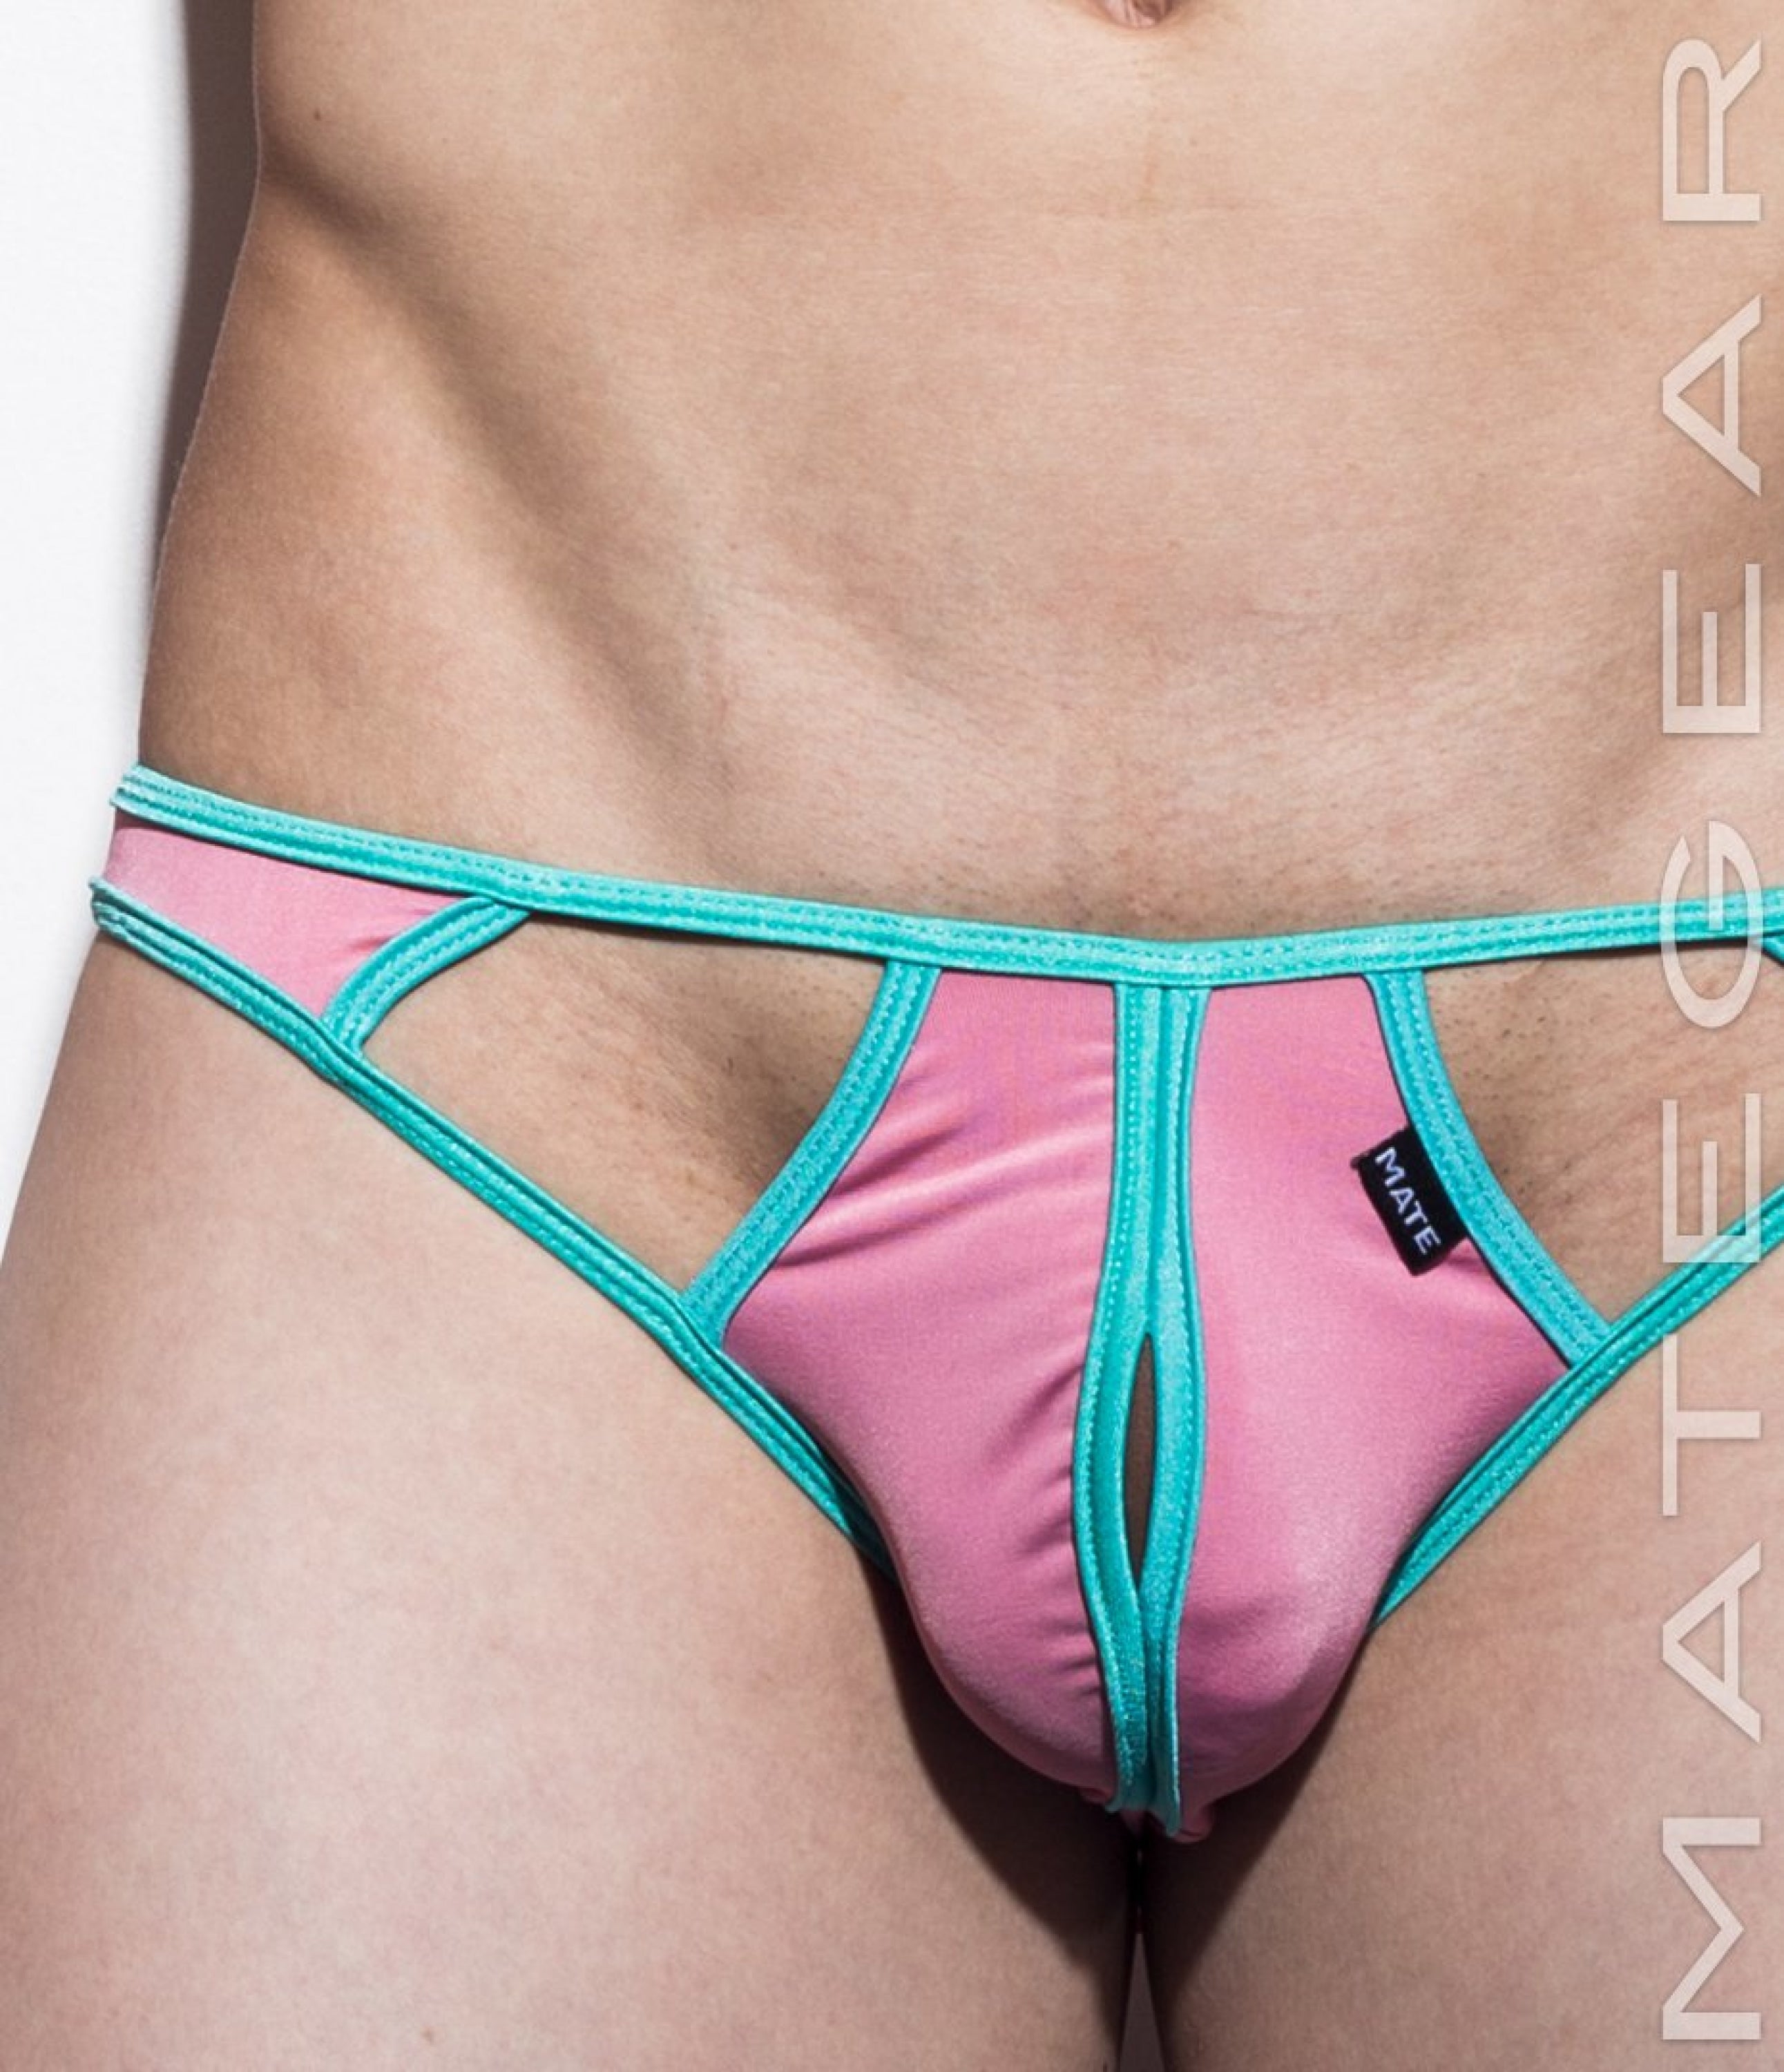 Sexy Men's Underwear Xpression Ultra Bikini - Kal Joo (Deconstructed Back) - MATEGEAR - Sexy Men's Swimwear, Underwear, Sportswear and Loungewear